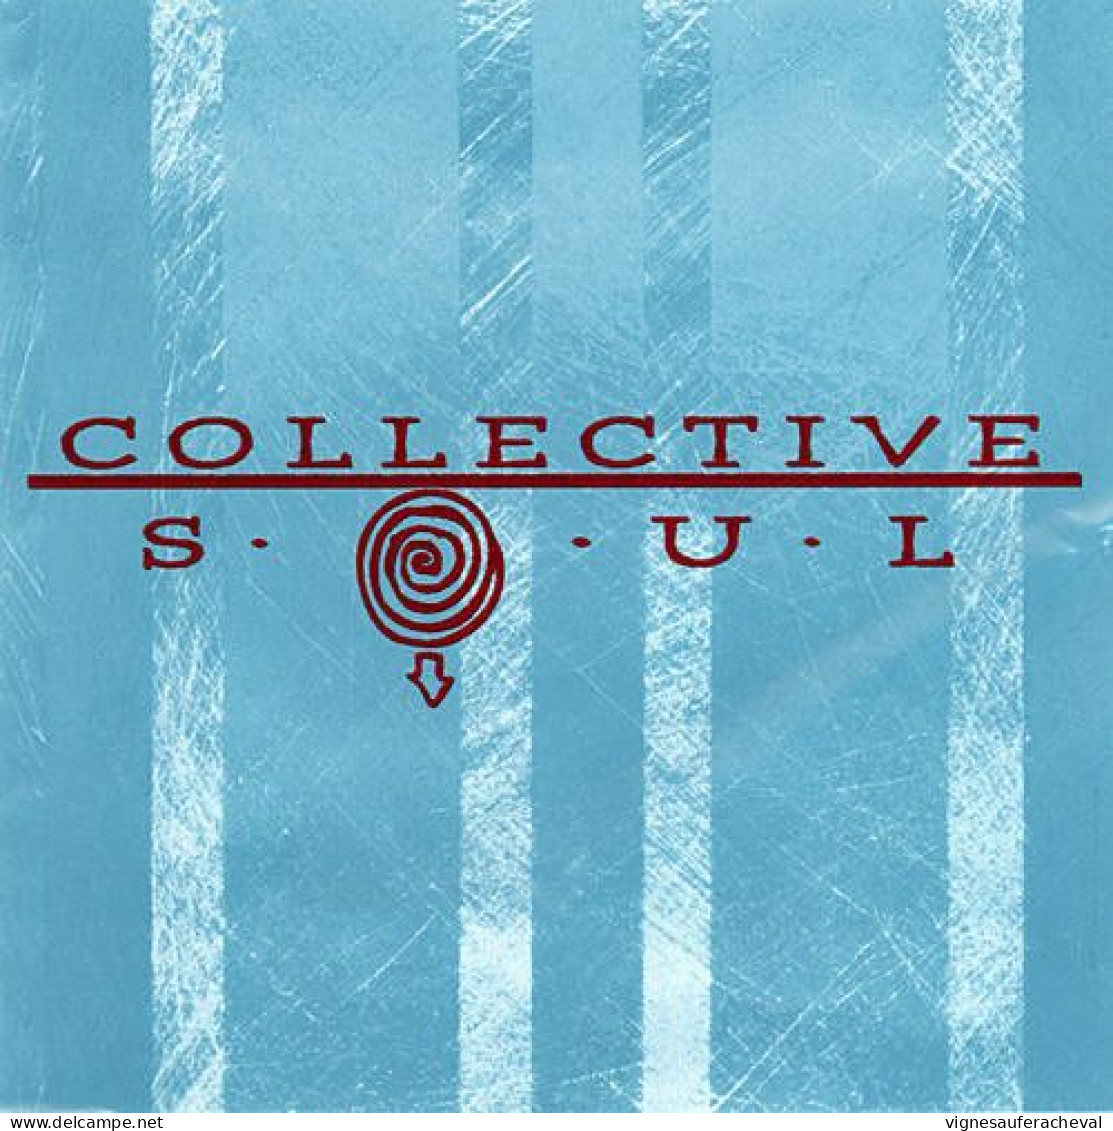 Collective Soul - éponyme - Otros - Canción Inglesa